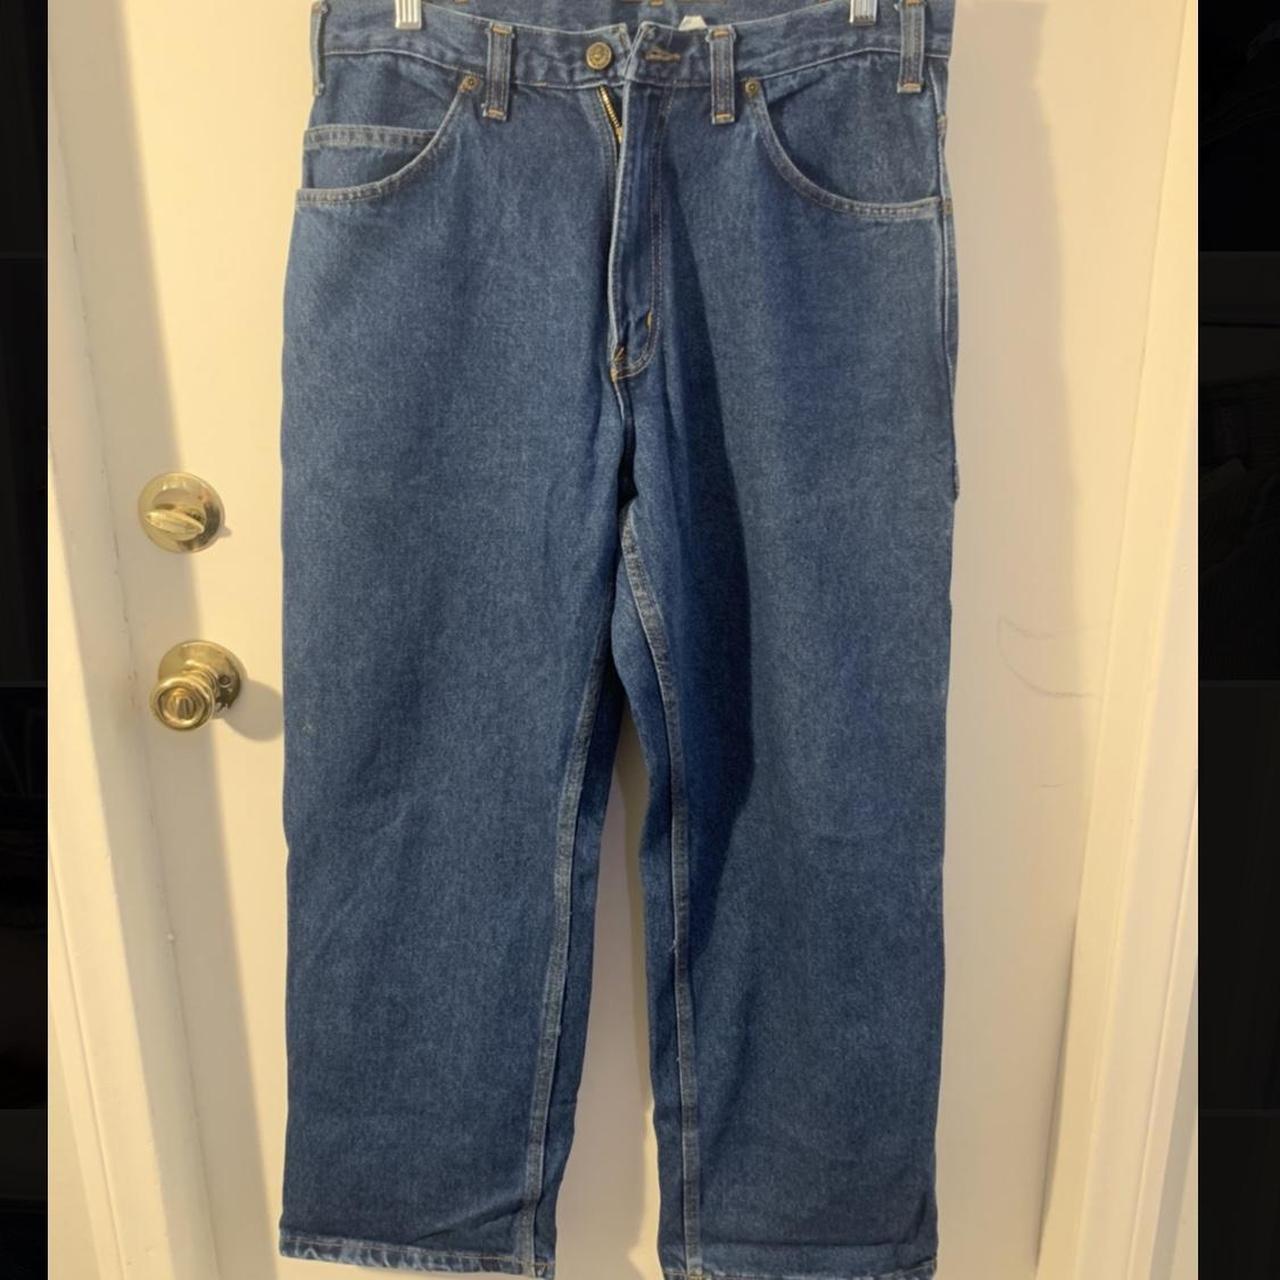 Ben Davis carpenter jeans size 34 waist and 30... - Depop